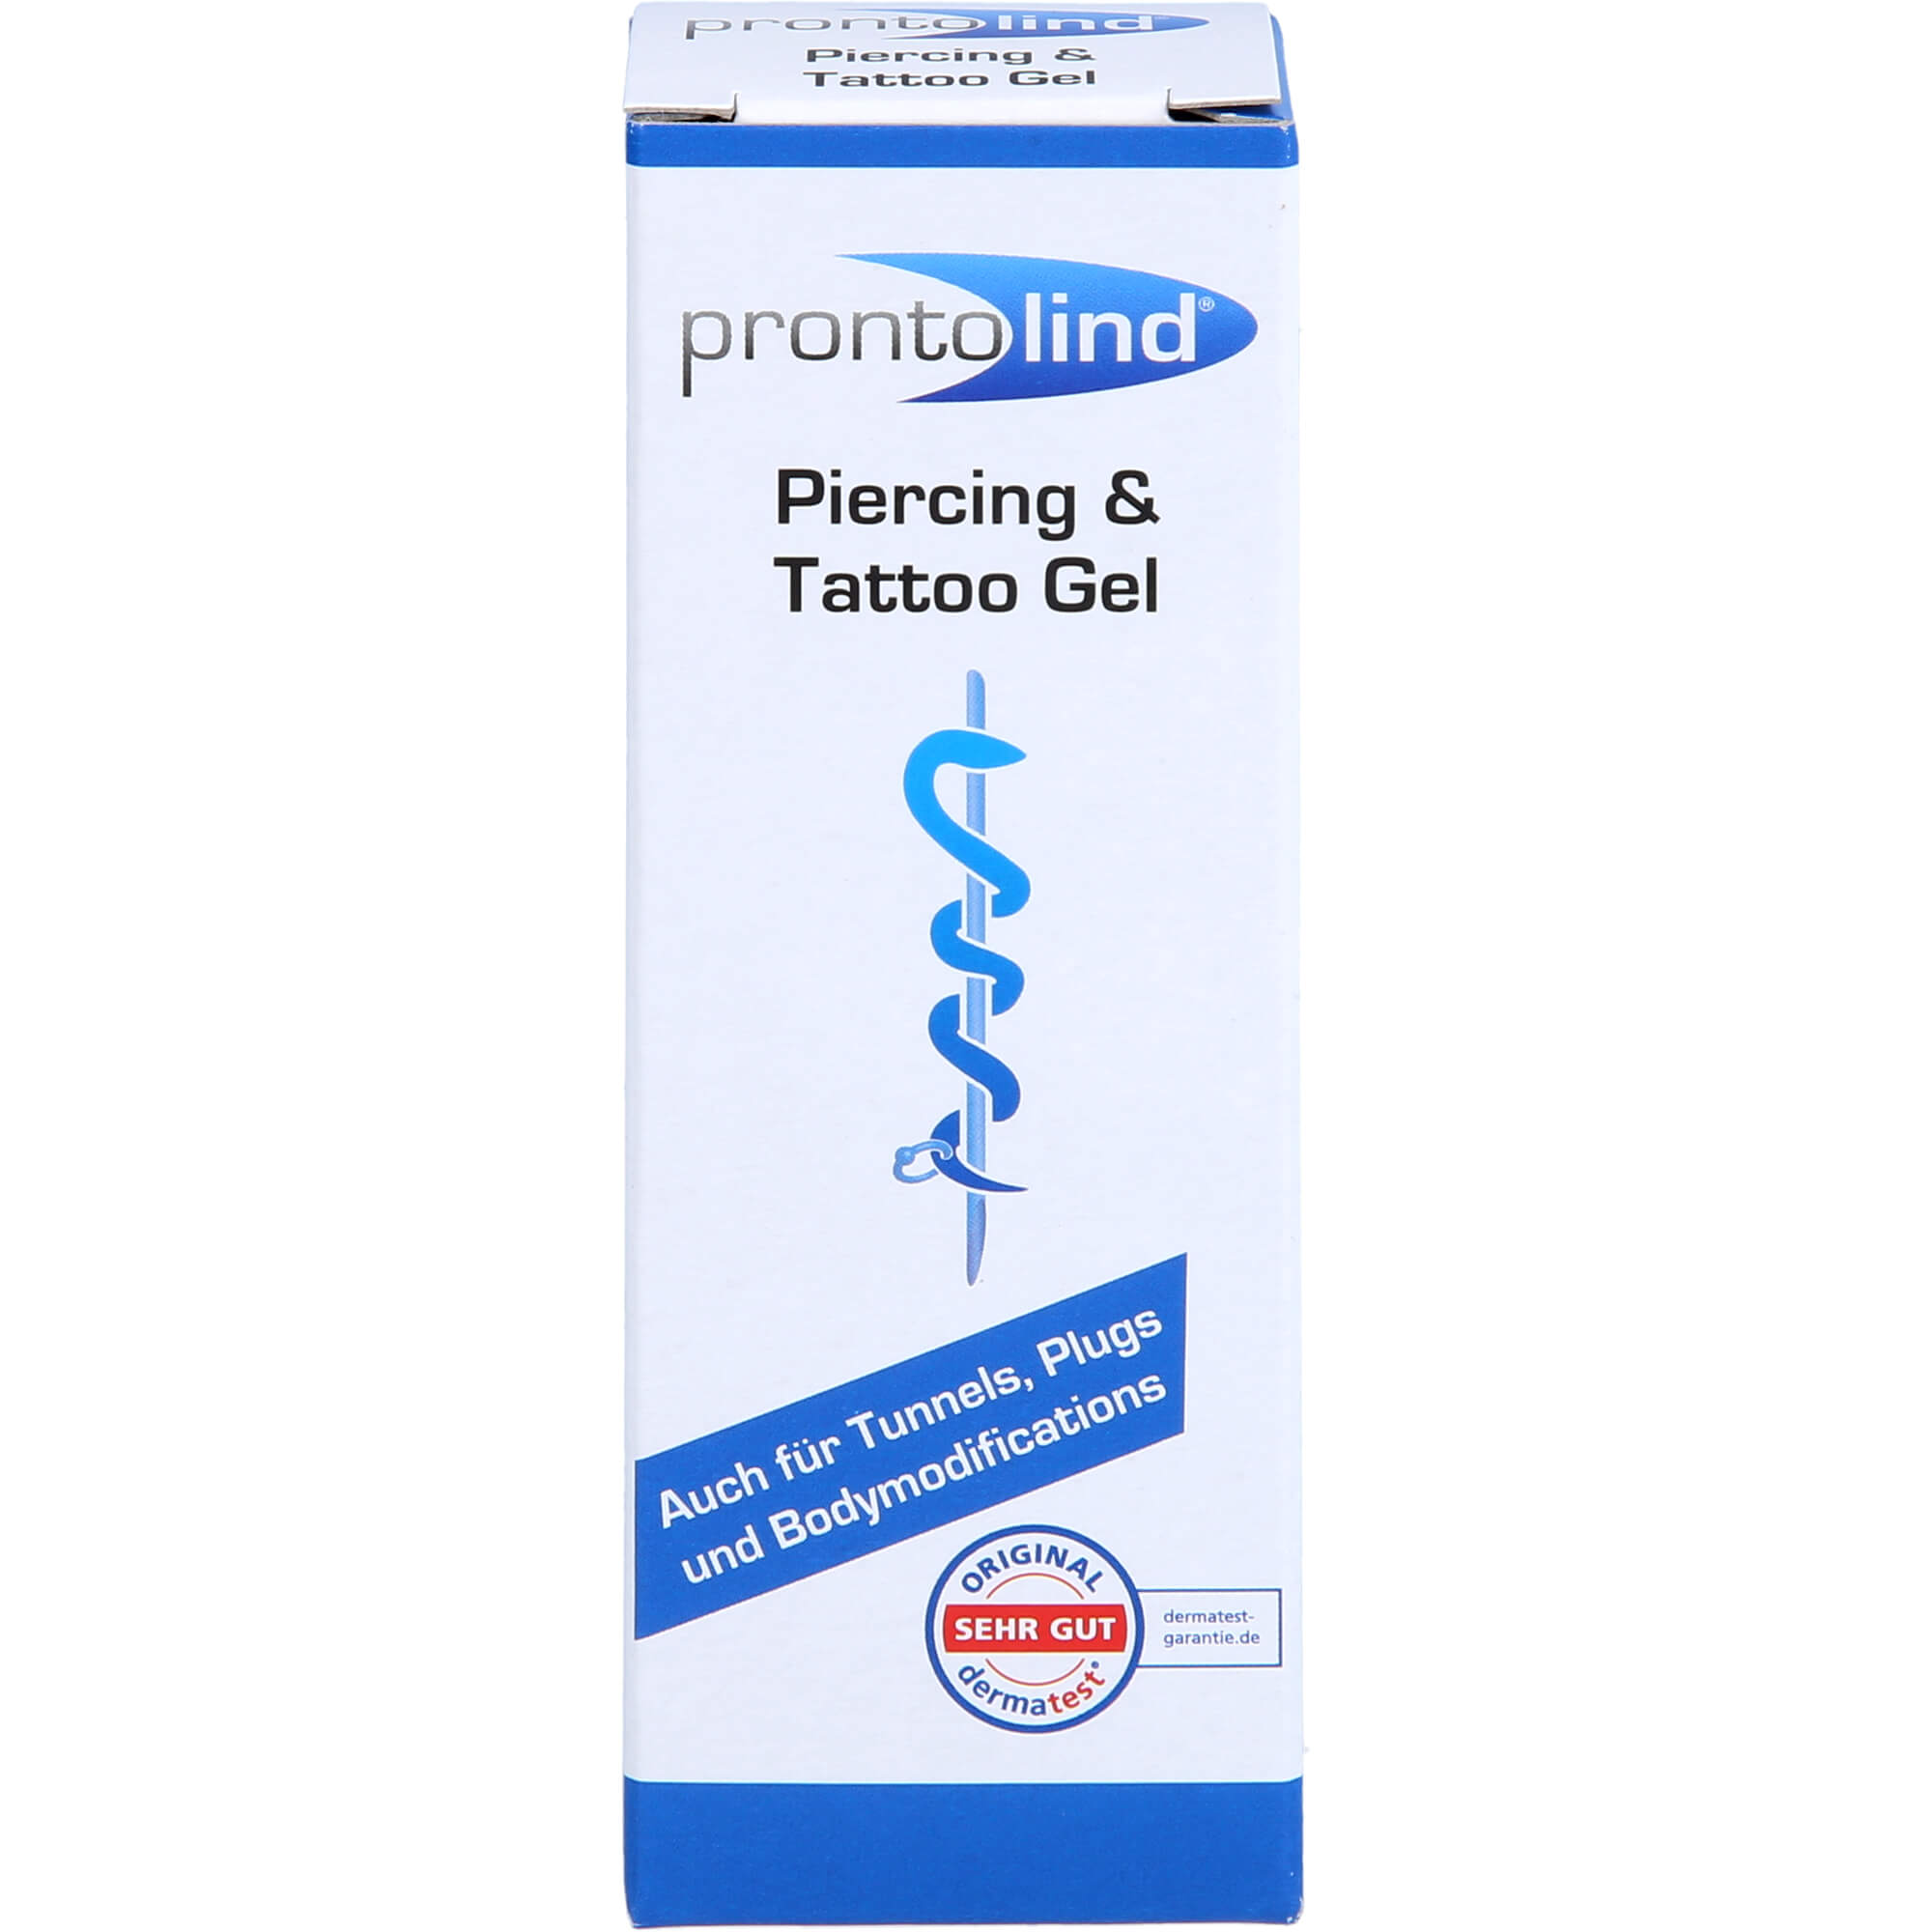 PRONTOLIND Piercing und Tattoo Gel